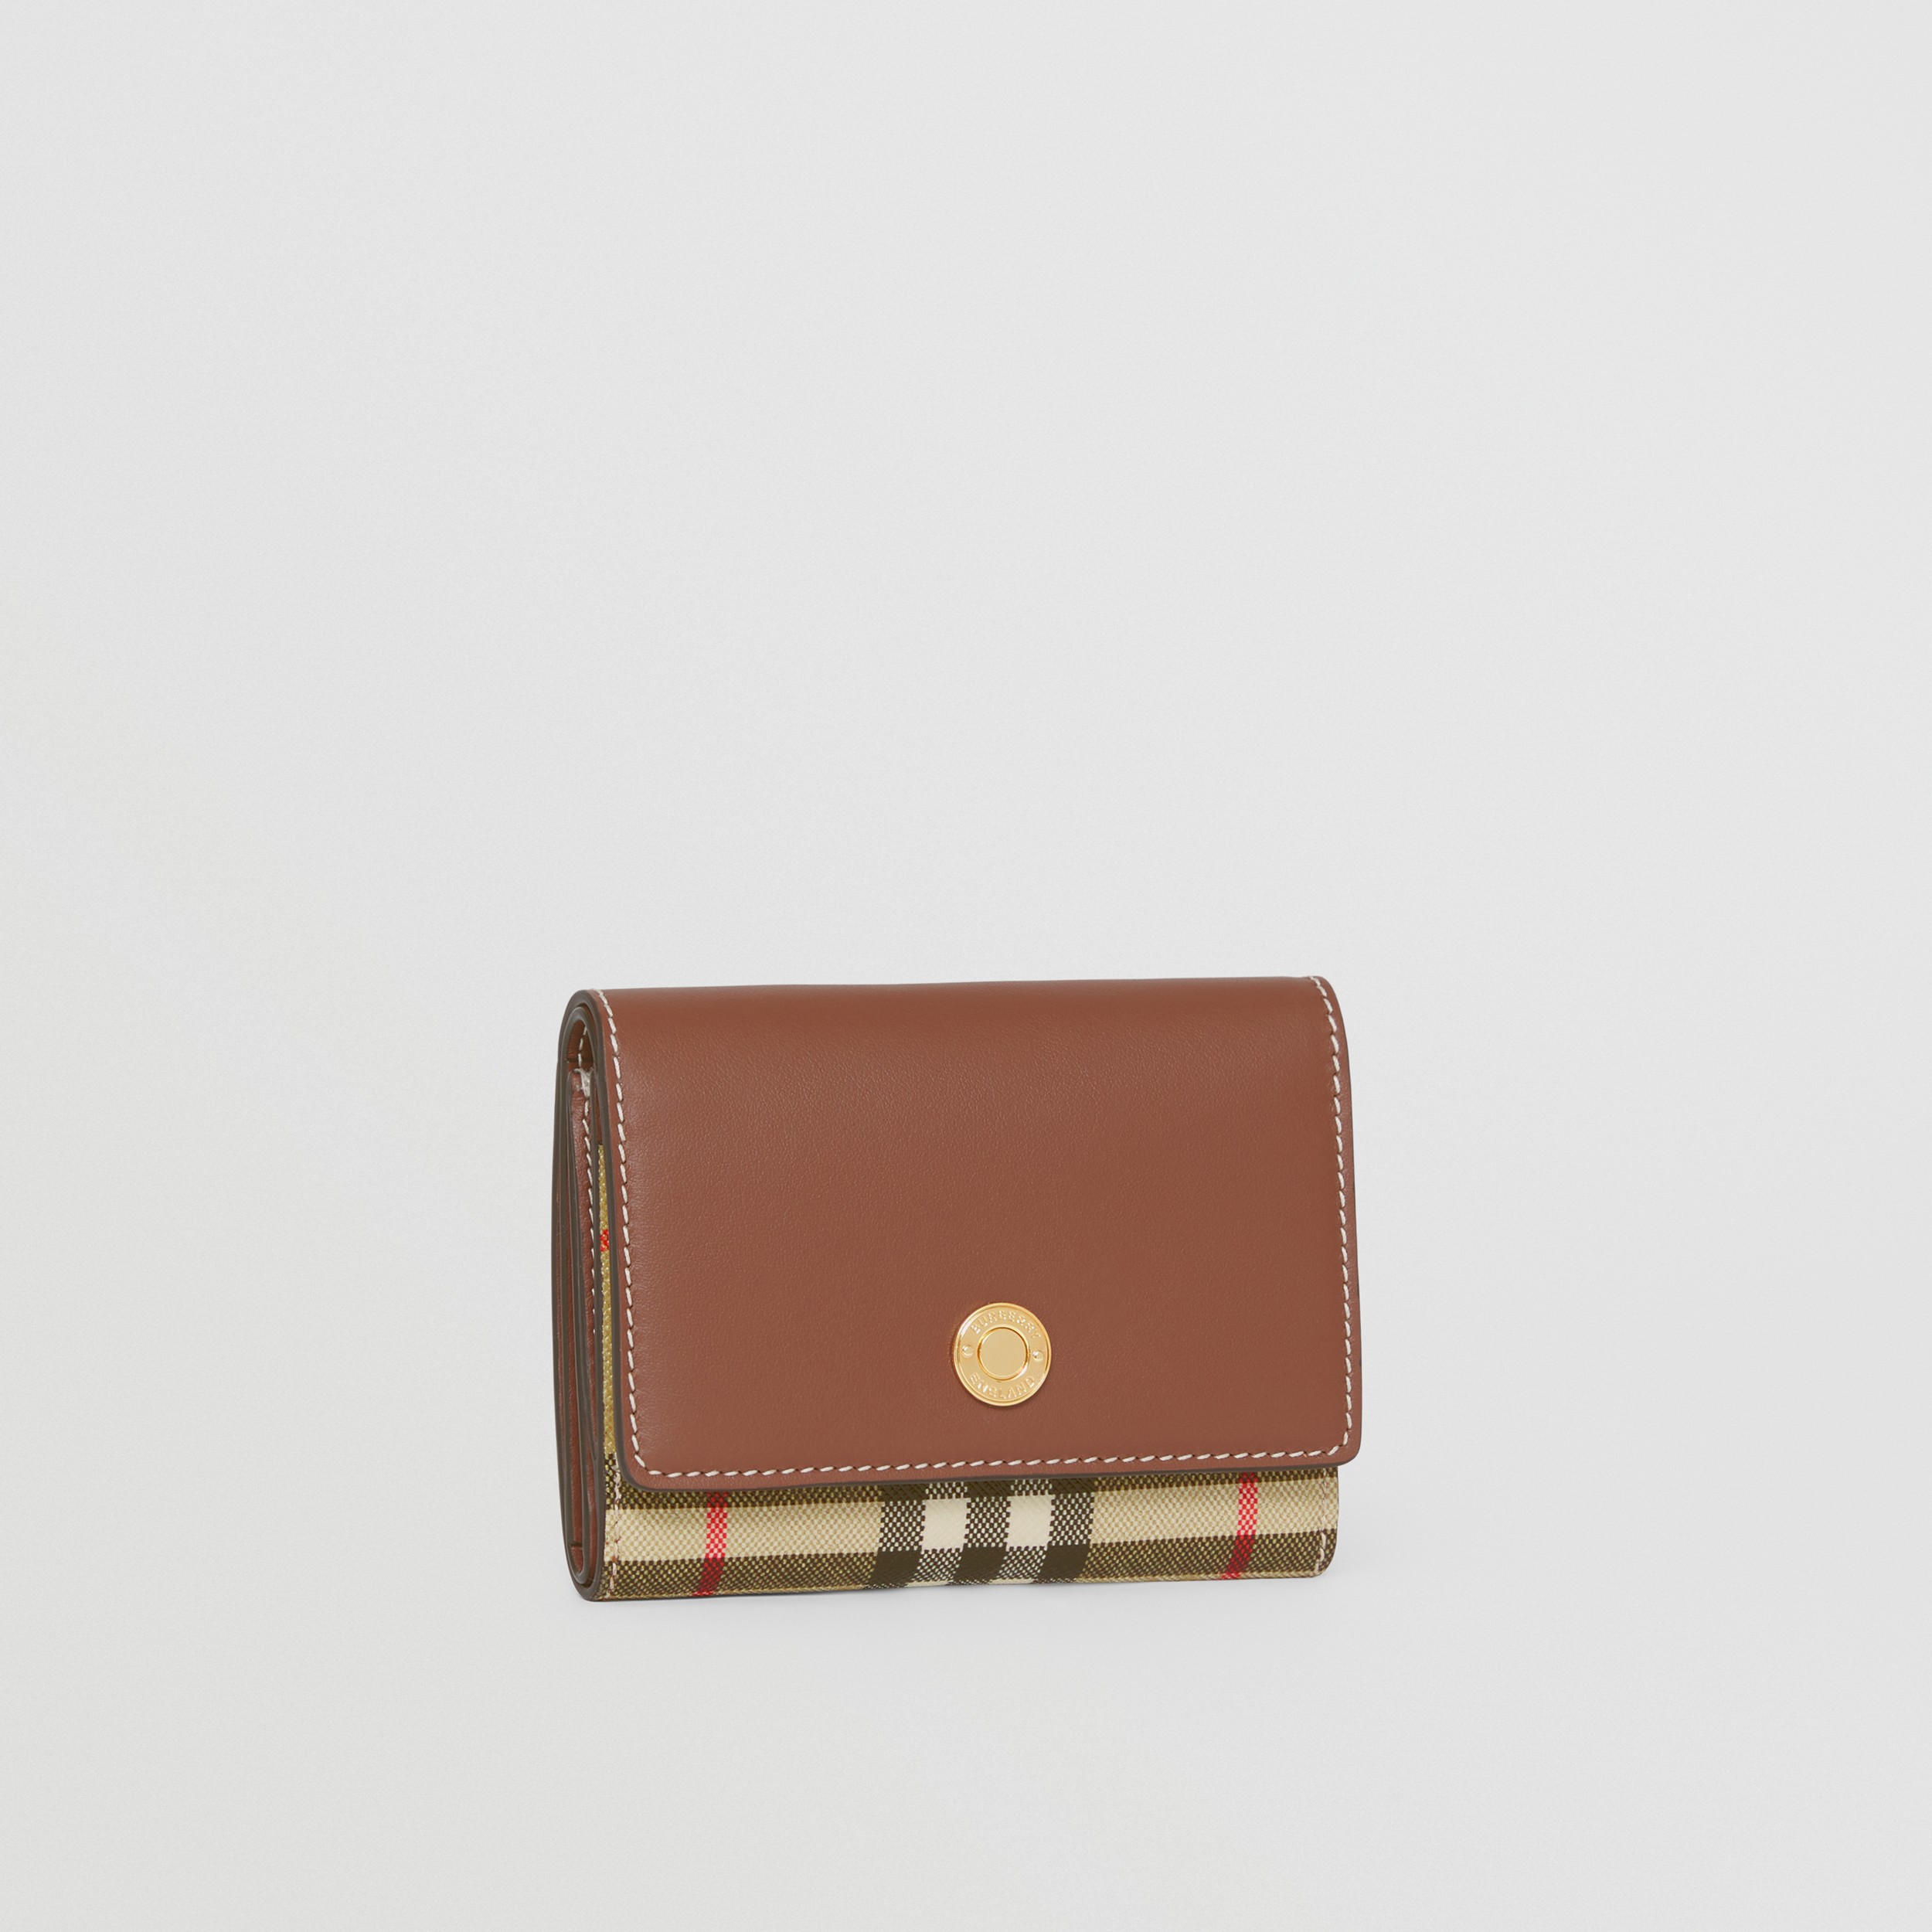 Складной бумажник из кожи и ткани e-canvas, компактный размер (Коричнево-рыжий) - Для женщин | Официальный сайт Burberry® - 4